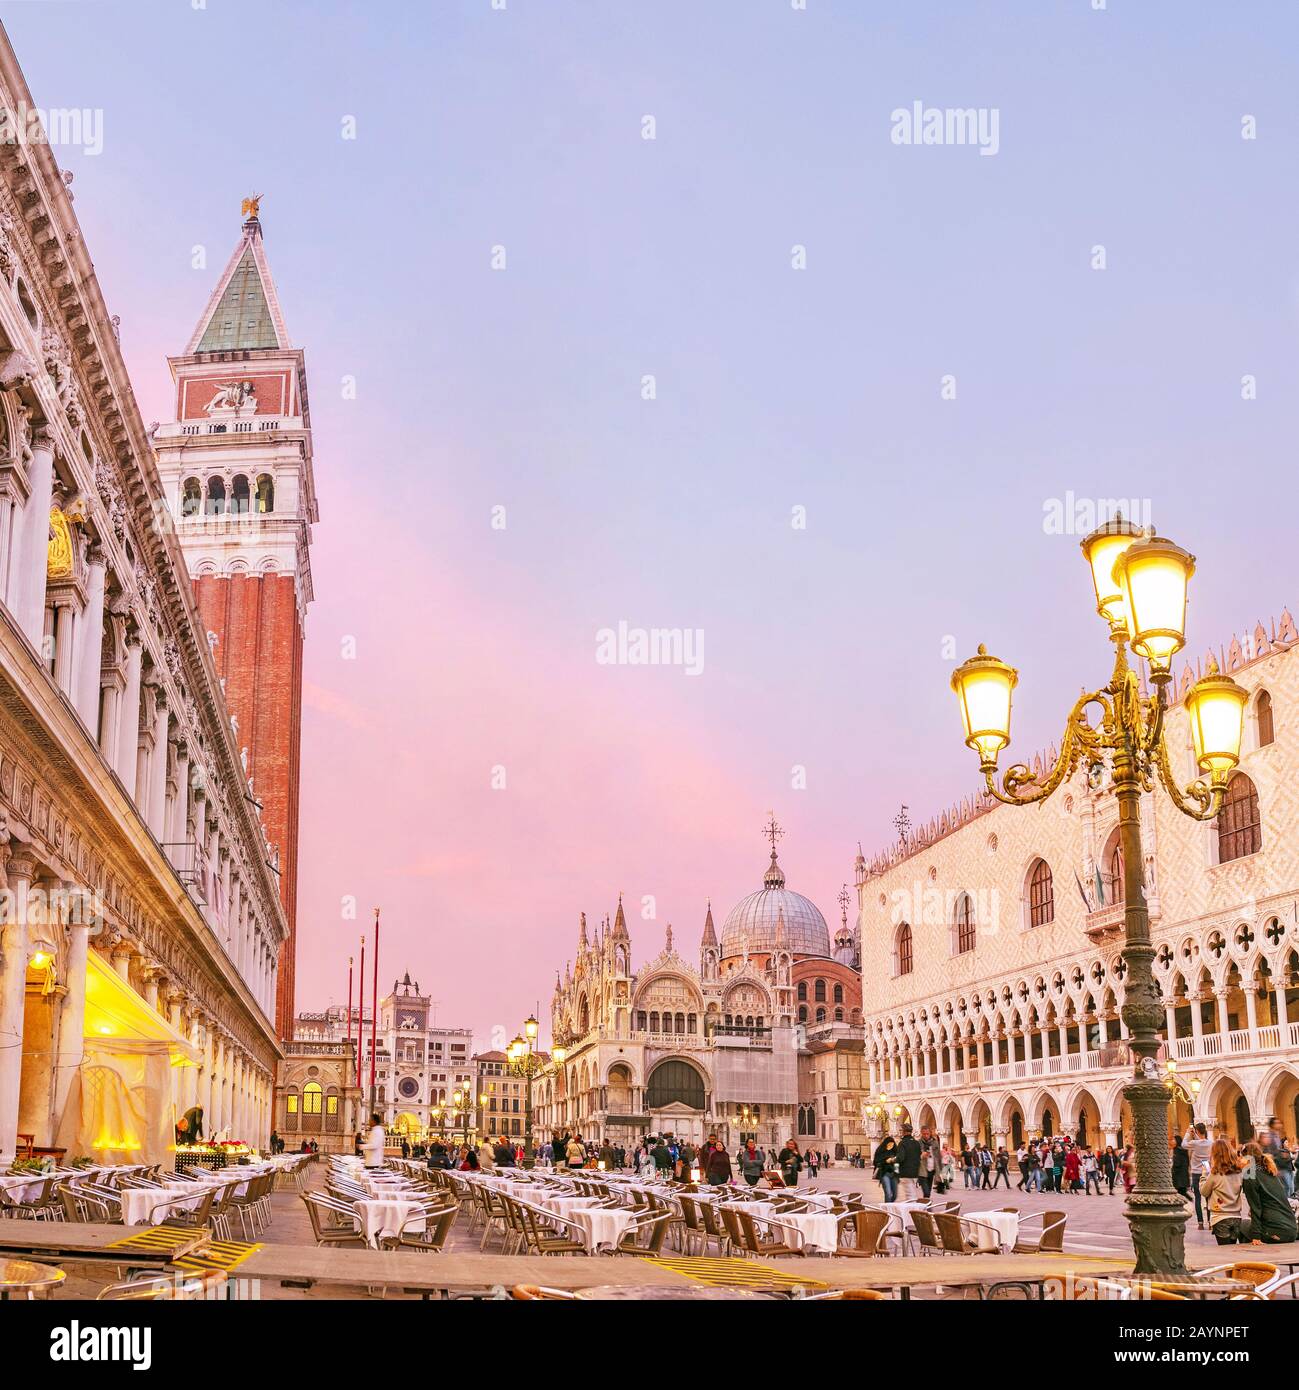 24 DE OCTUBRE de 2018, VENECIA, ITALIA: Famoso monumento turístico Plaza de San Marco en Venecia por la noche Foto de stock